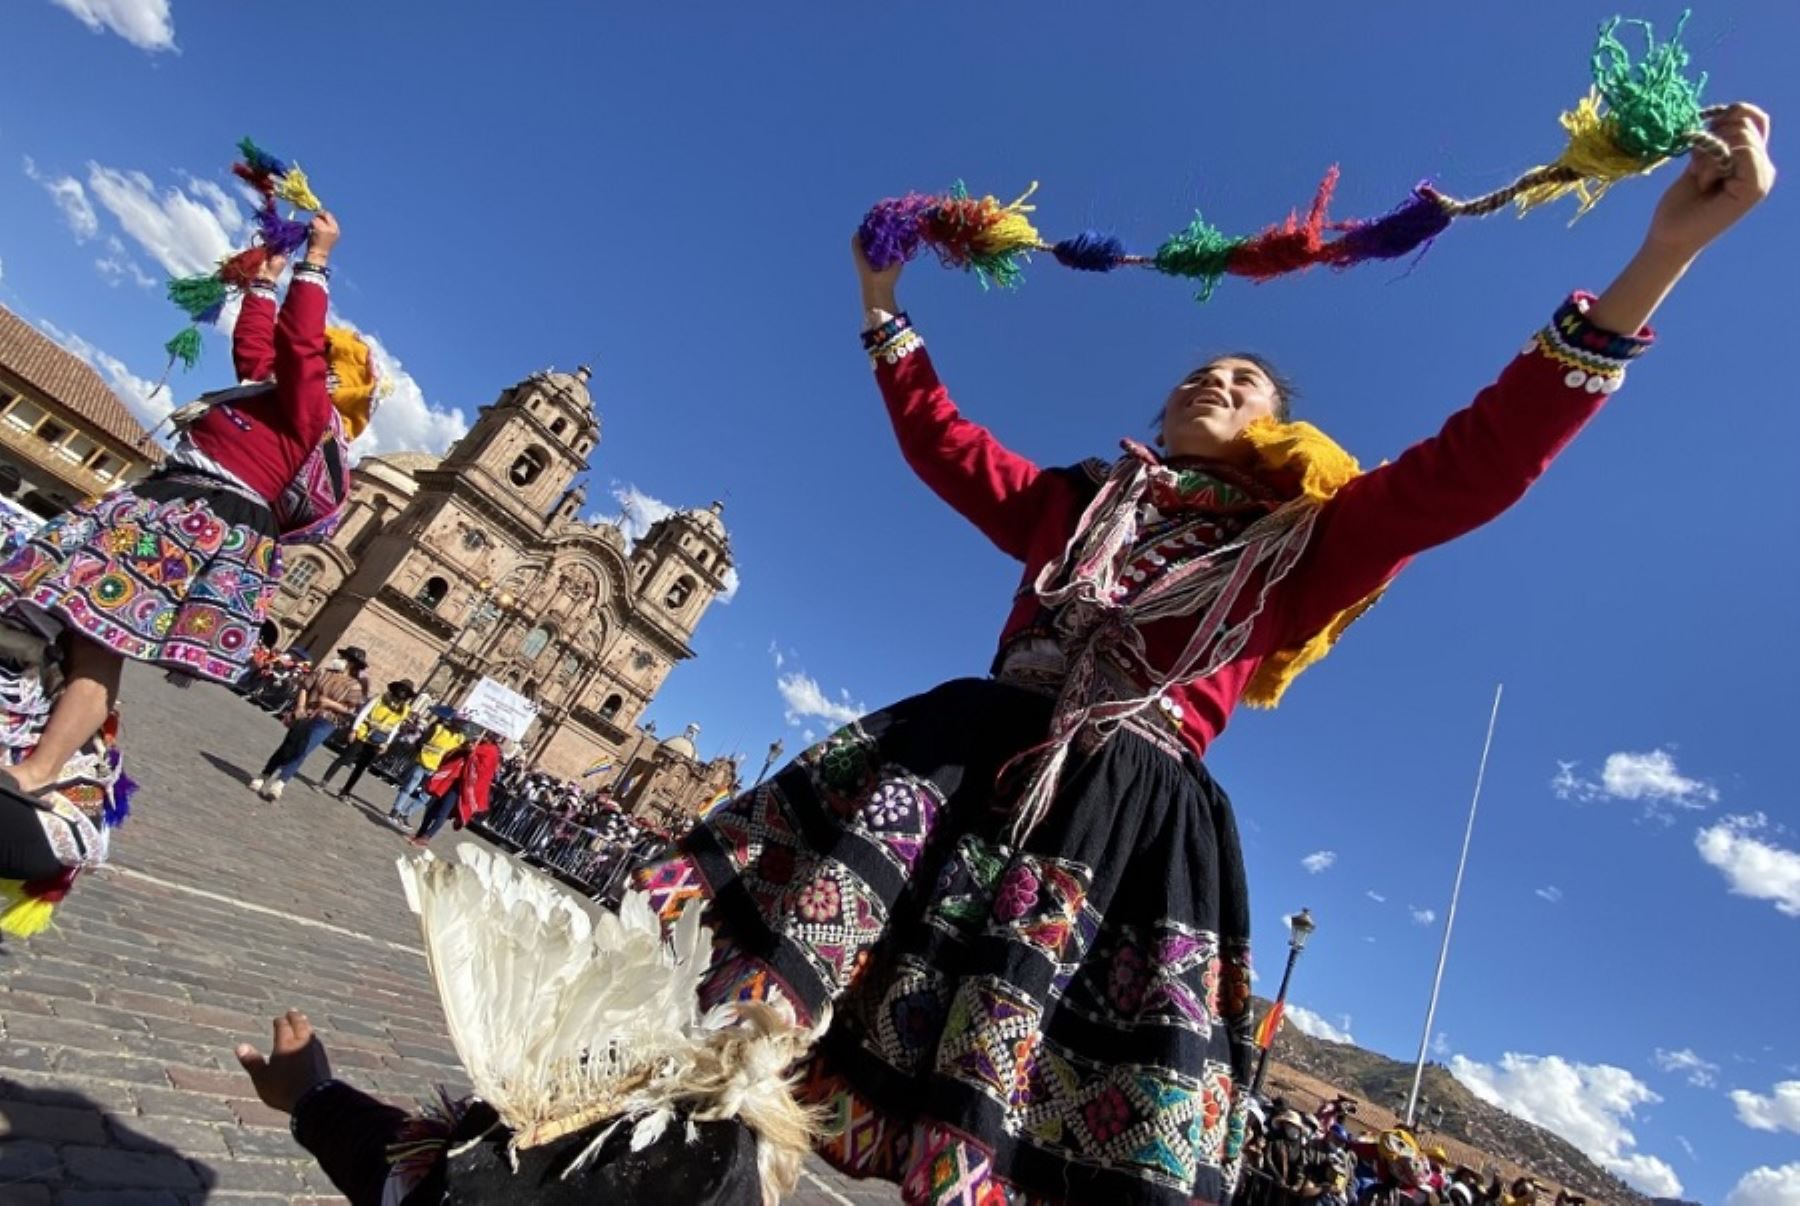 Referirse a Cusco en la actualidad es elogiar su inequívoca condición de principal destino turístico del Perú y uno de los mágicos lugares del mundo que merecen visitarse más de una vez, como lo destacan artículos de prestigiosas publicaciones internacionales de viajes.